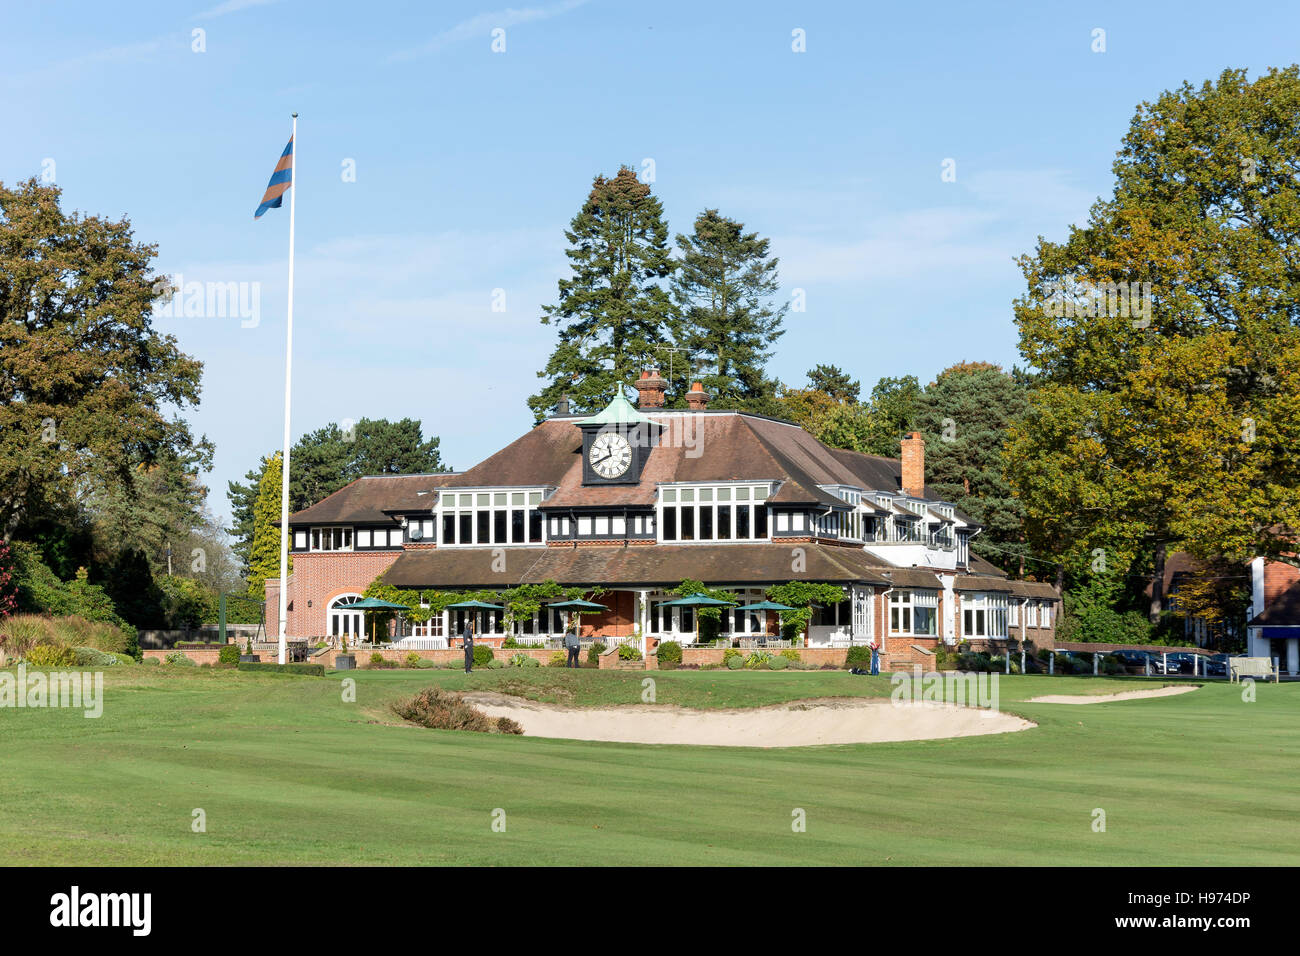 Club-house et 18ème green, Sunningdale Golf Course, Sunningdale, Berkshire, Angleterre, Royaume-Uni Banque D'Images